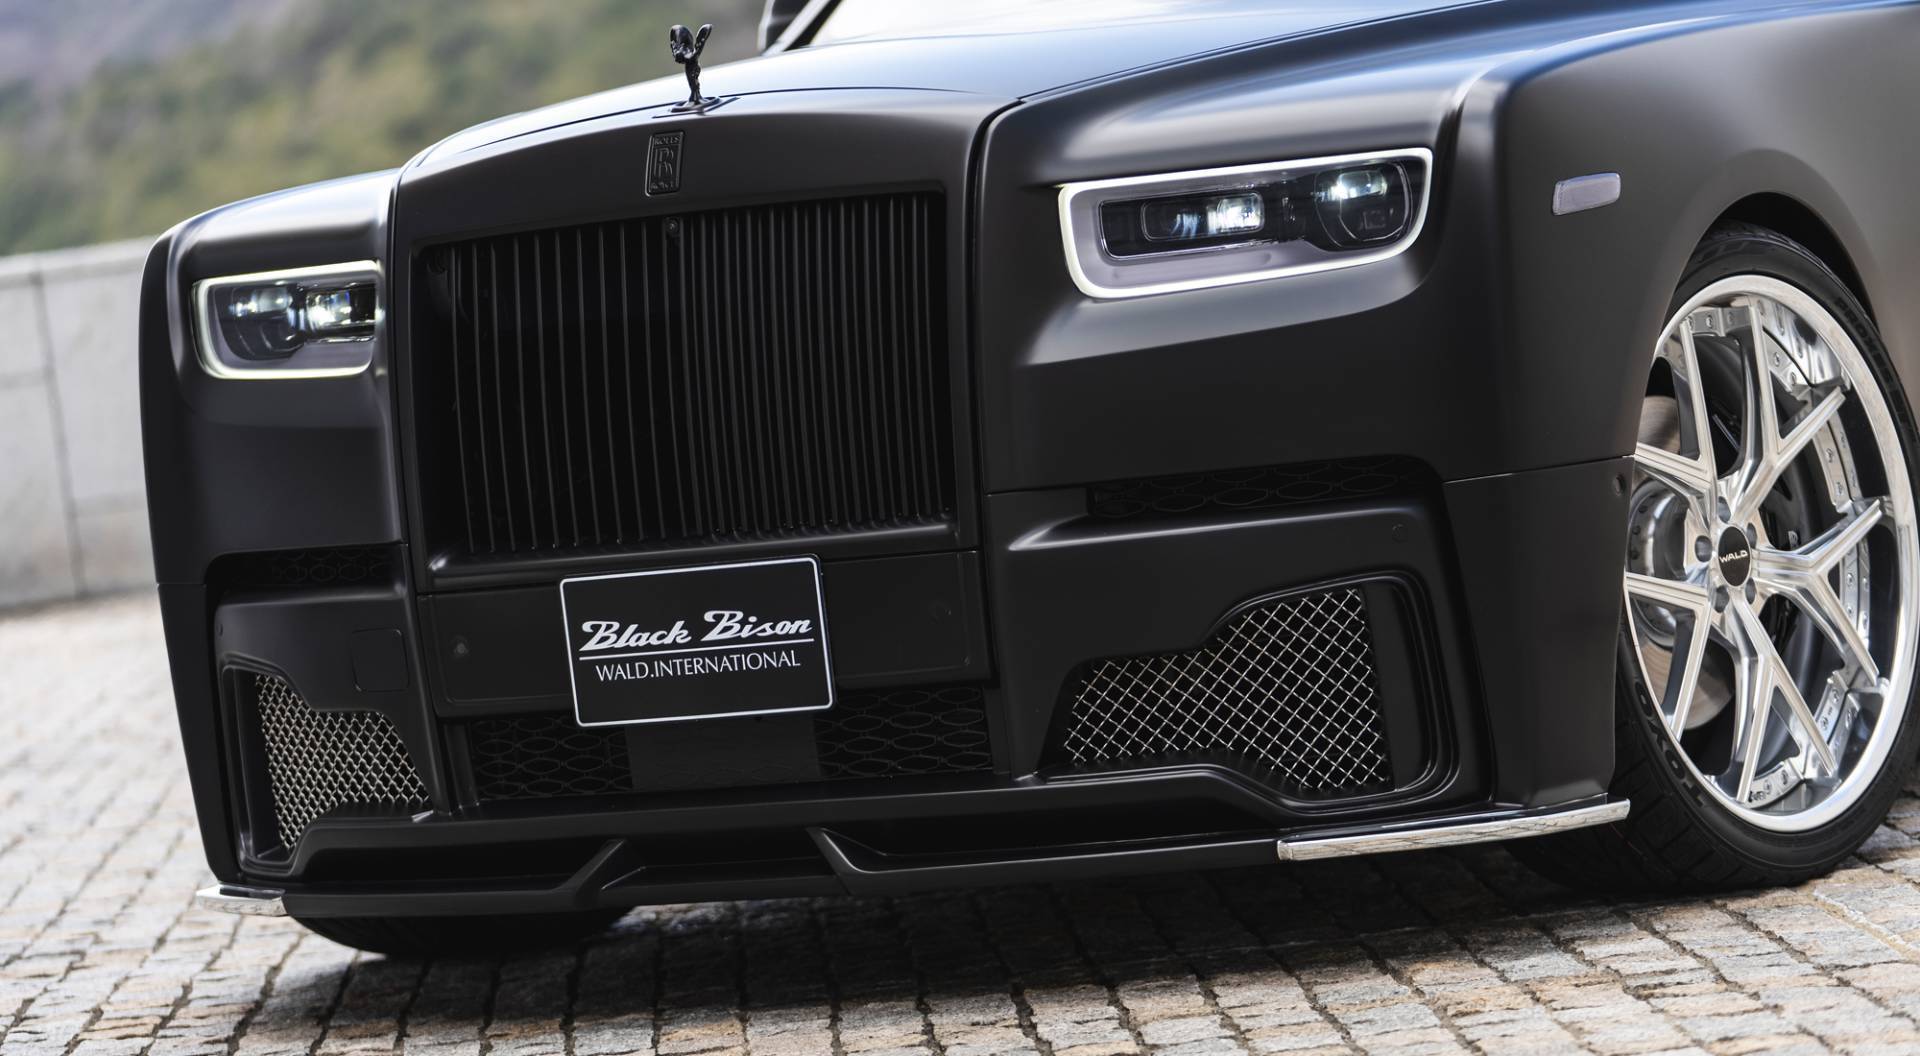 Những chiếc siêu xe Rolls-Royce Phantom độc đáo nhất thế giới